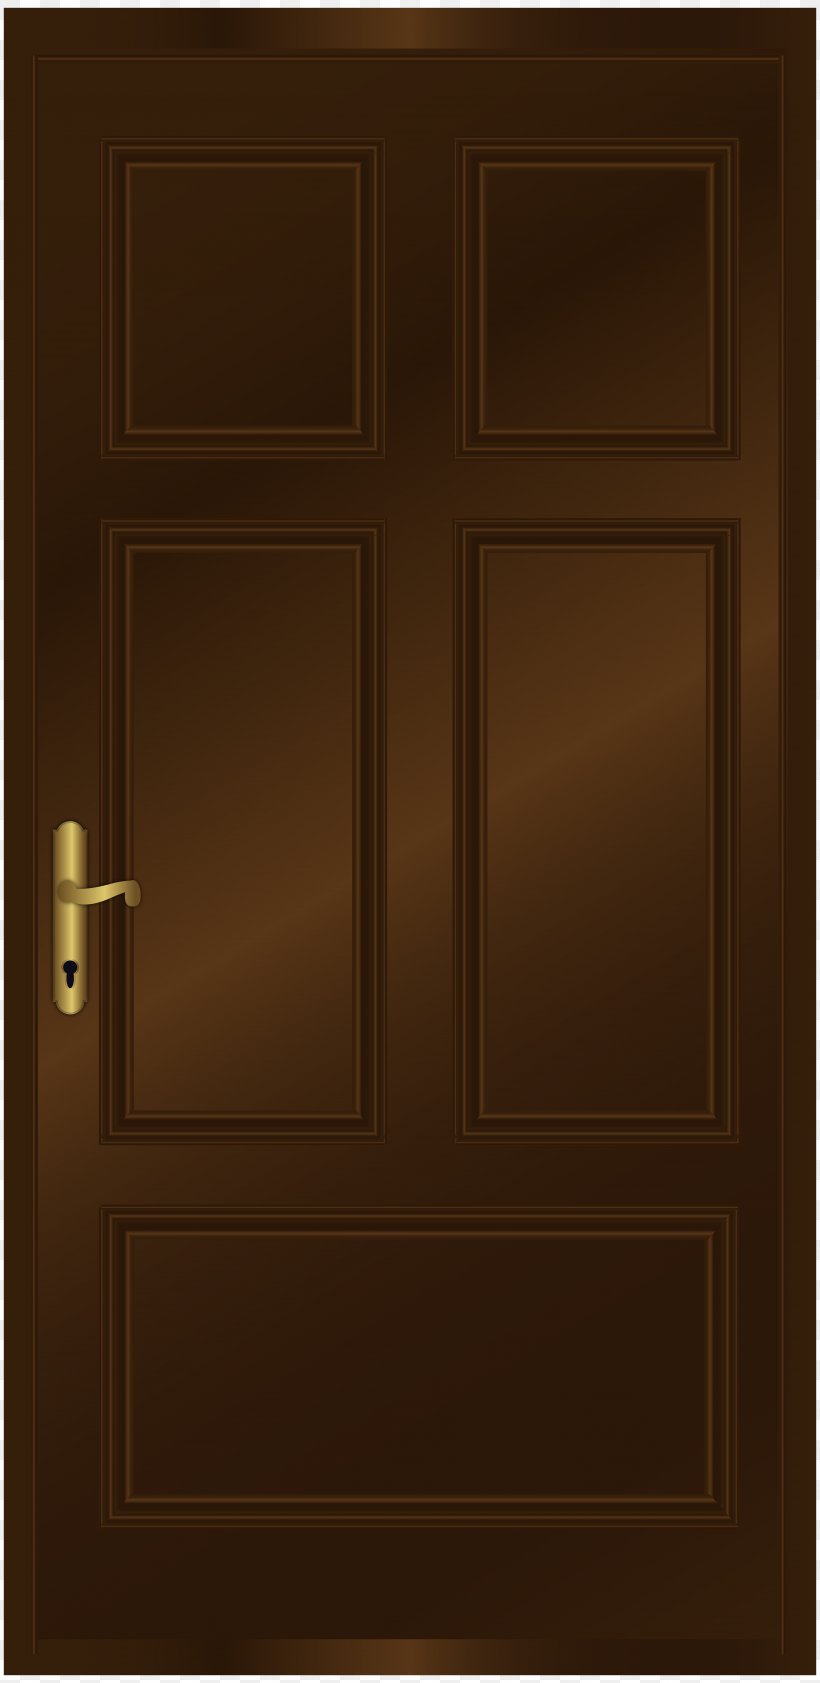 Window Wood Stain Door Hardwood, PNG, 3897x8000px, Window, Brown, Door, Hardwood, Rectangle Download Free